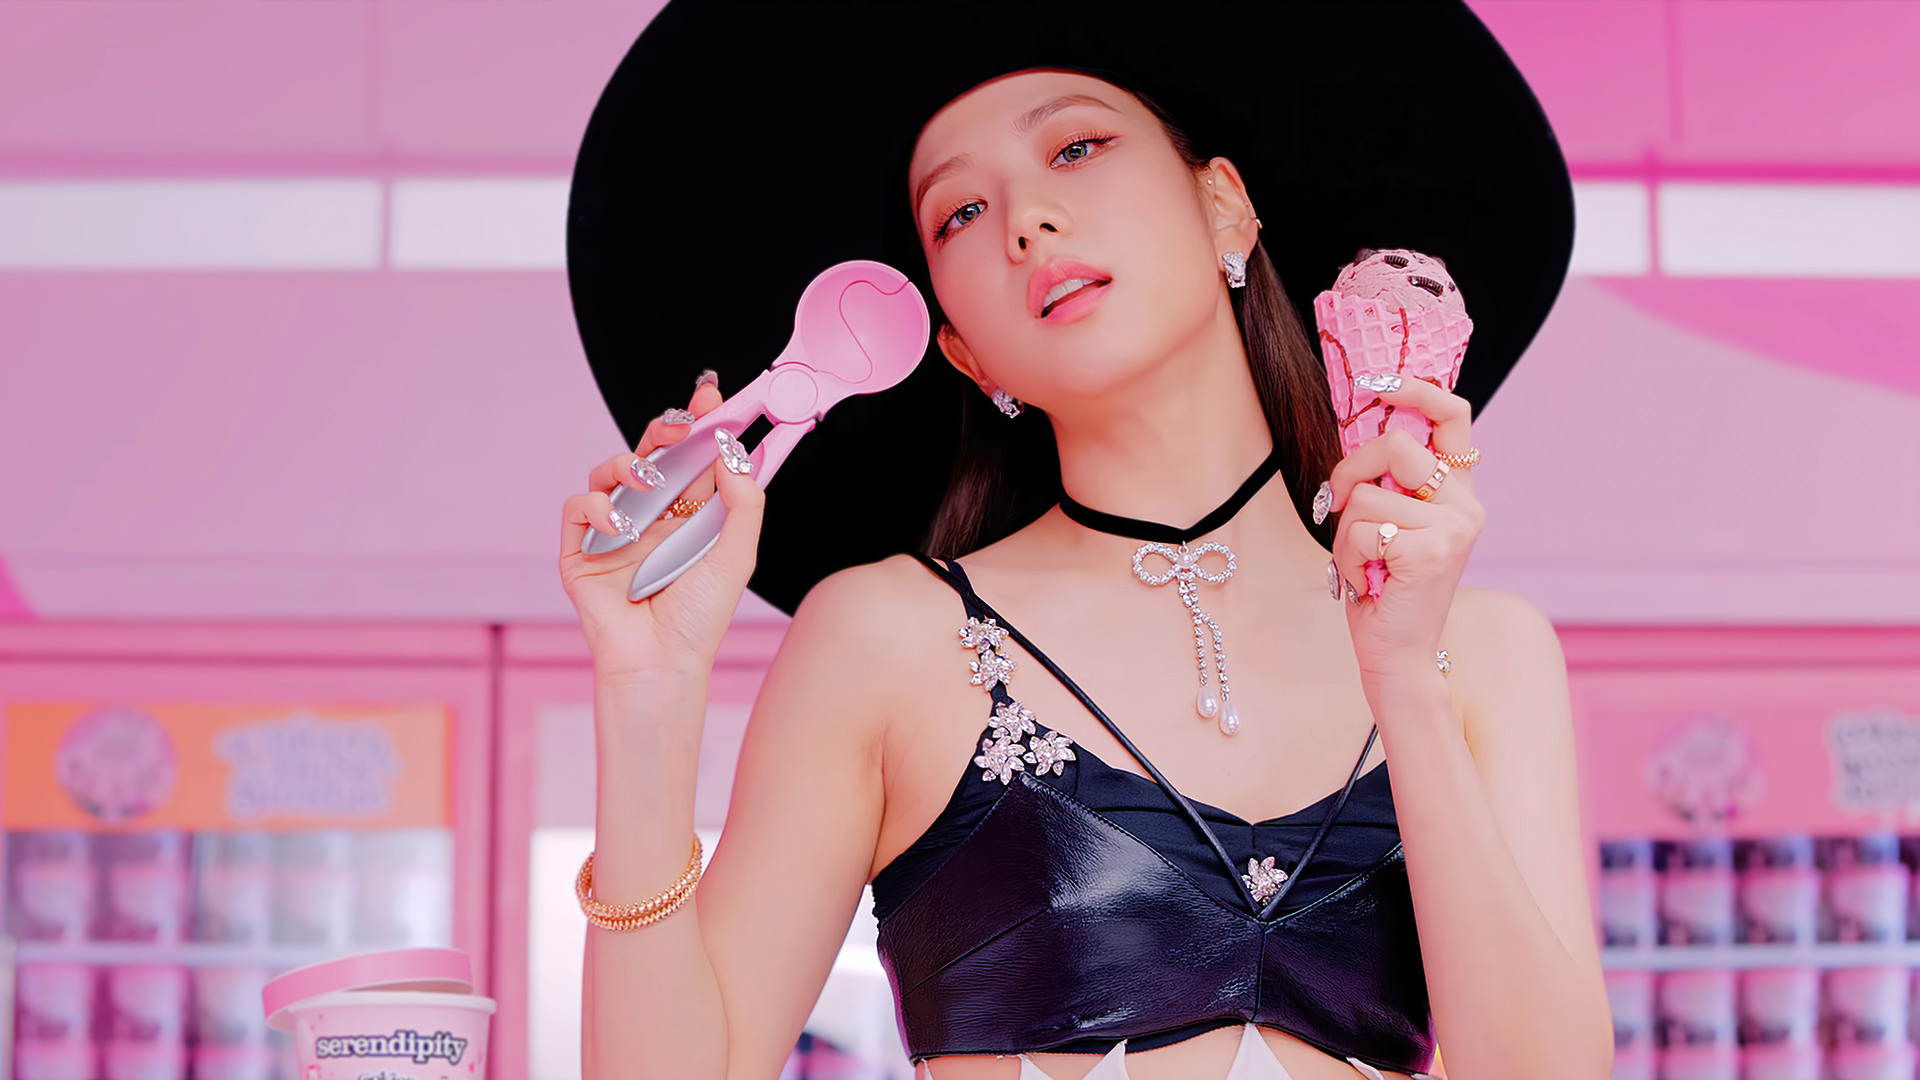 Jisoo Blackpink Ice Cream Wallpaper Hd Celebrities 4k Wallpapers